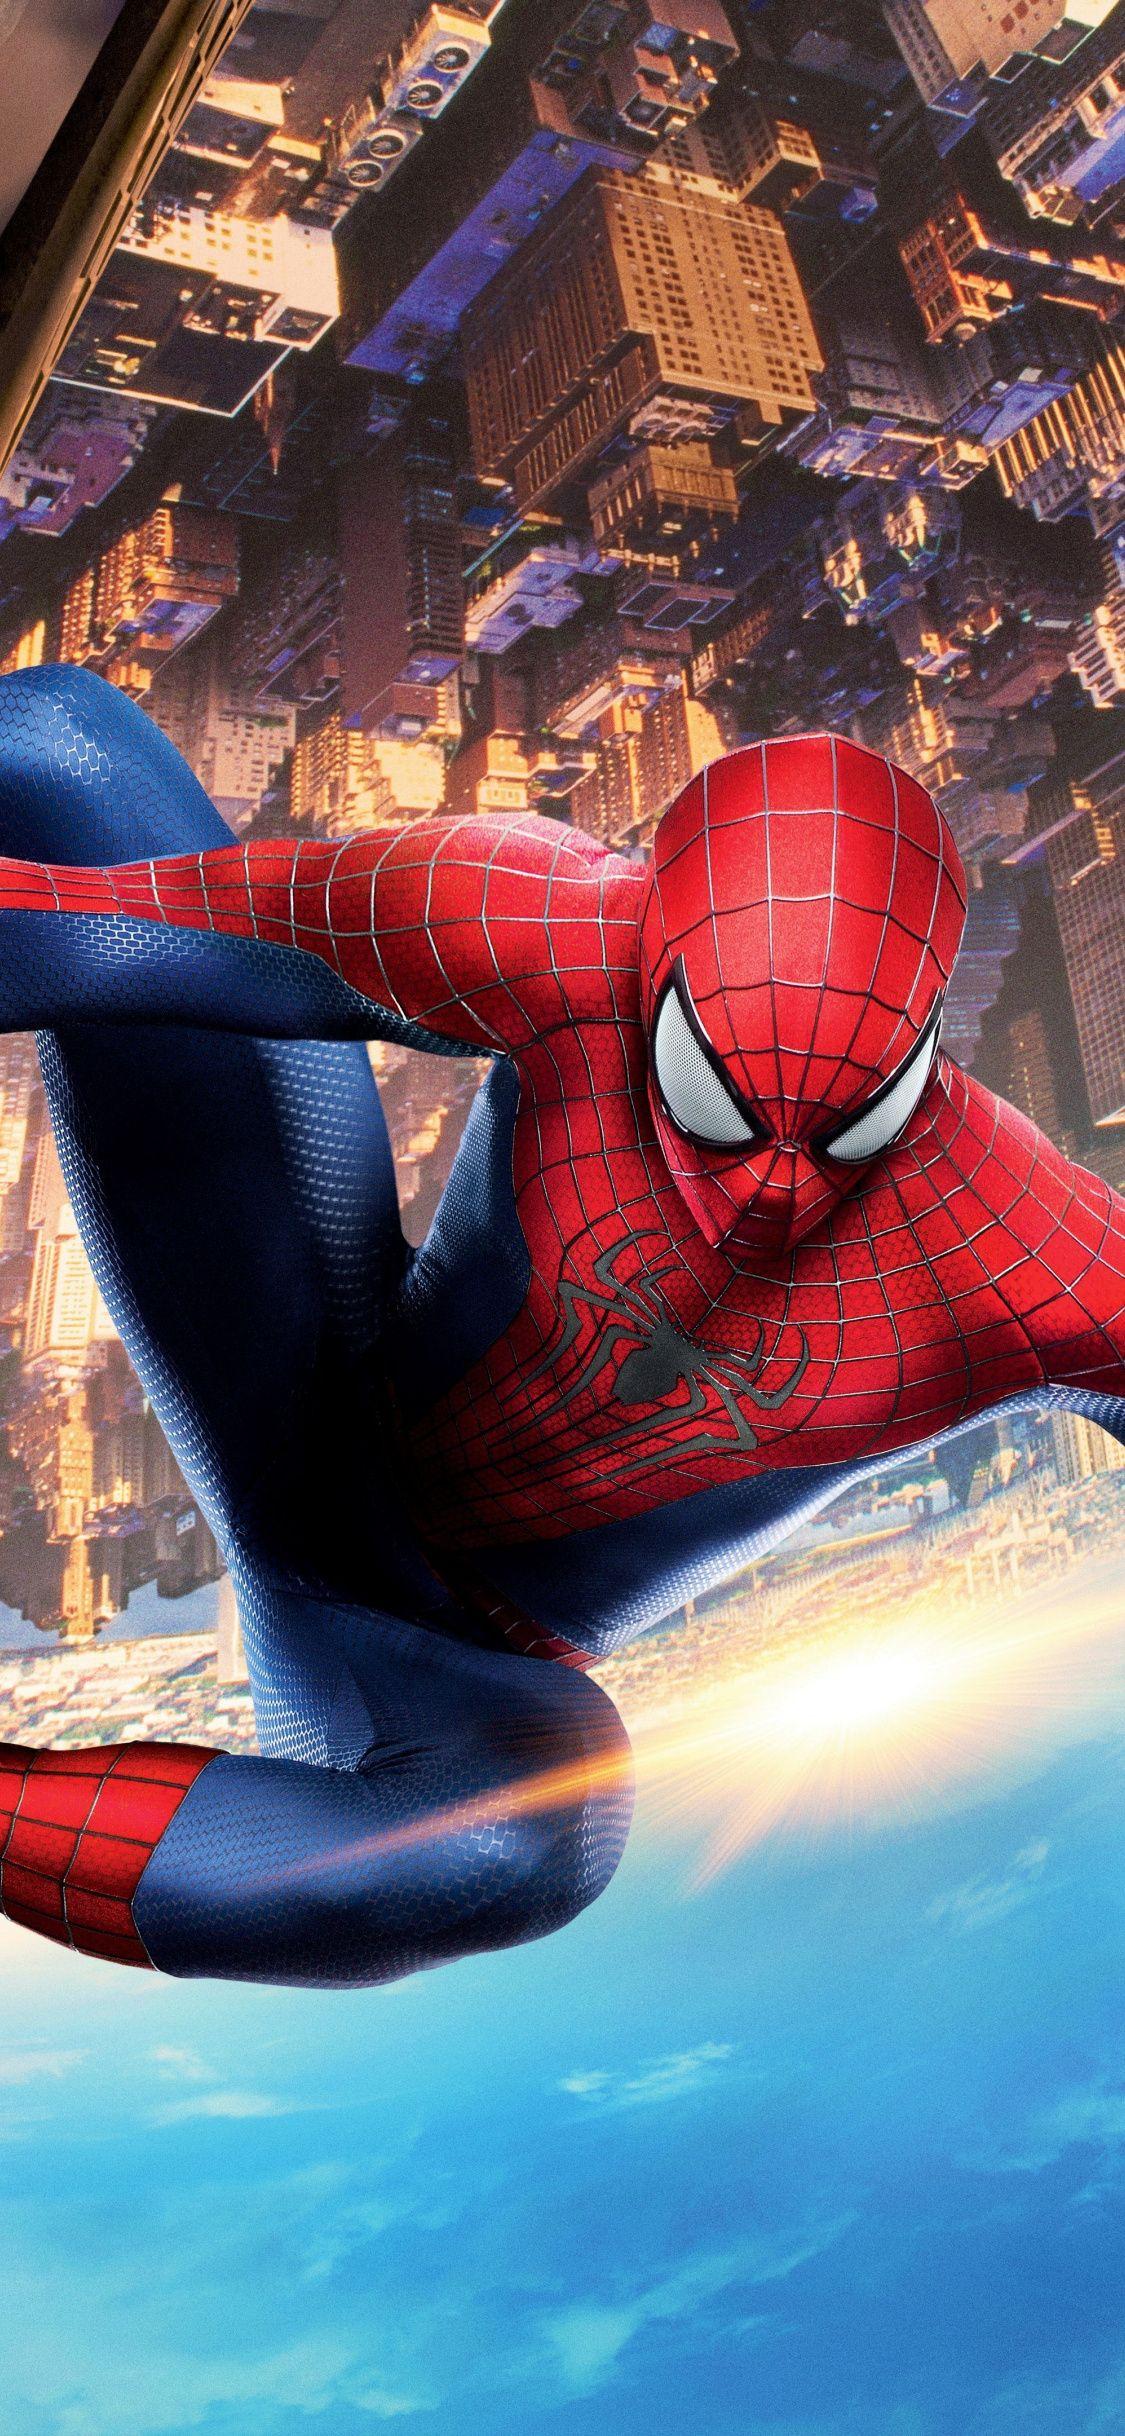 The Amazing Spider Man 2014 Movie, Spider Man, 1125x2436 Wallpaper. Superhero Wallpaper, Marvel Wallpaper, Spiderman